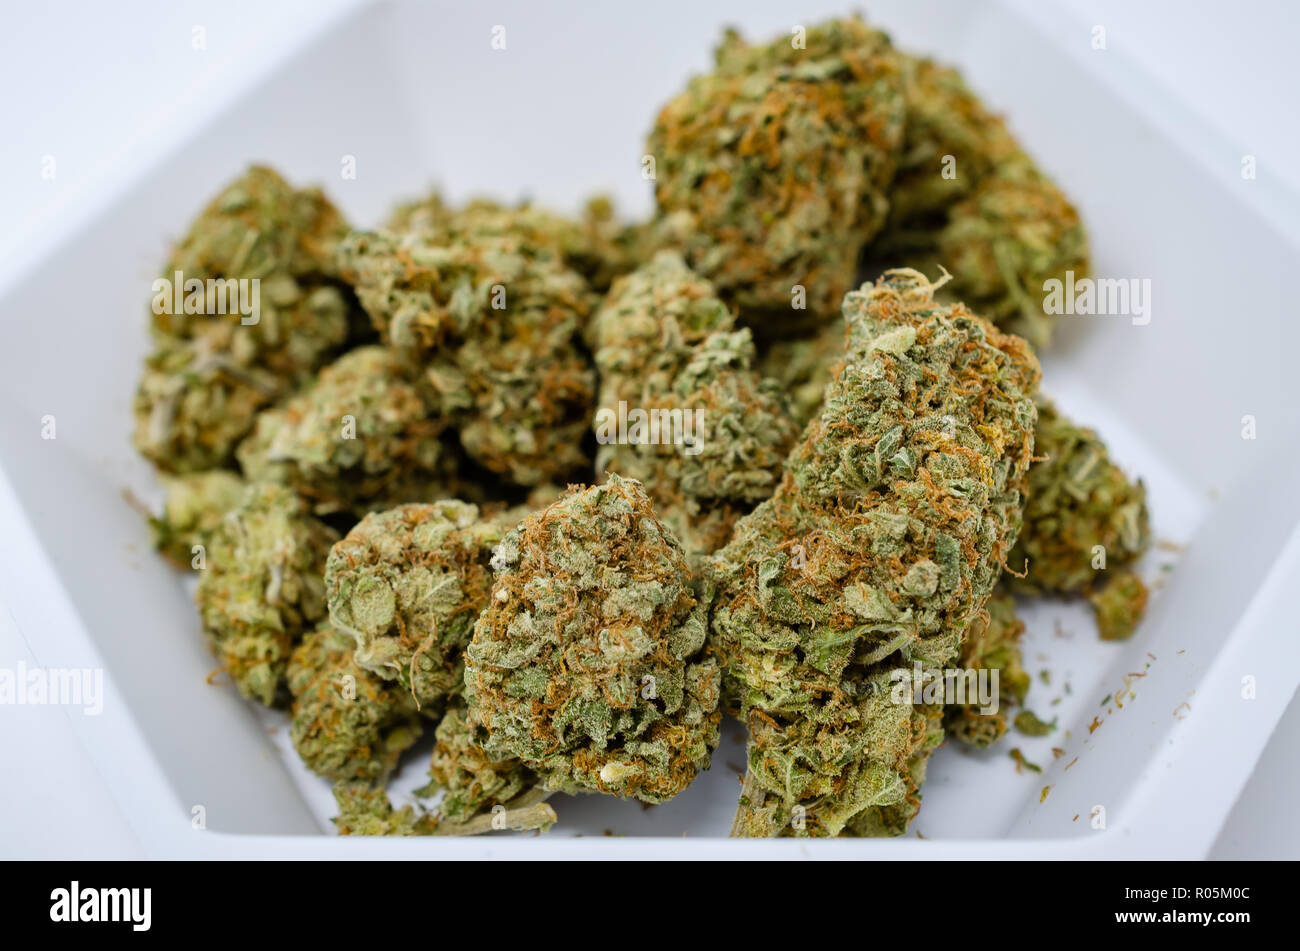 Close up of medical cannabis /marijuana on a weighting pot Stock Photo